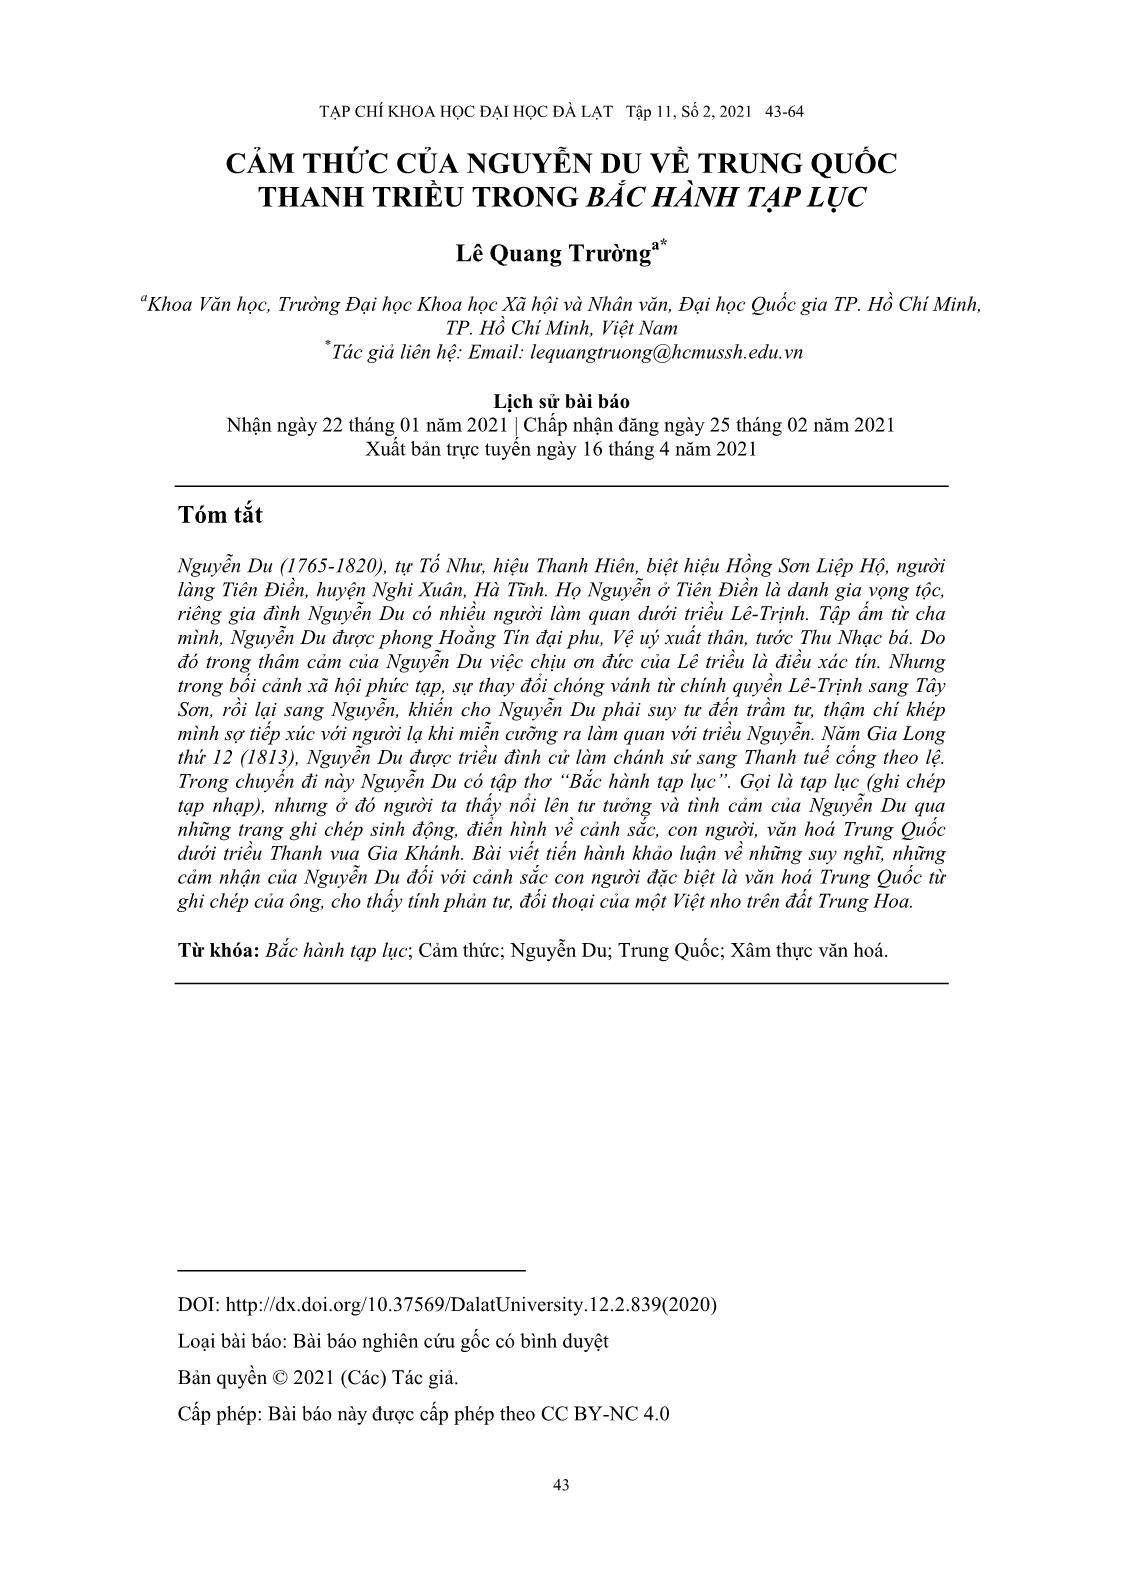 Cảm thức của Nguyễn Du về Trung Quốc Thanh triều trong “Bắc hành tạp lục” trang 1